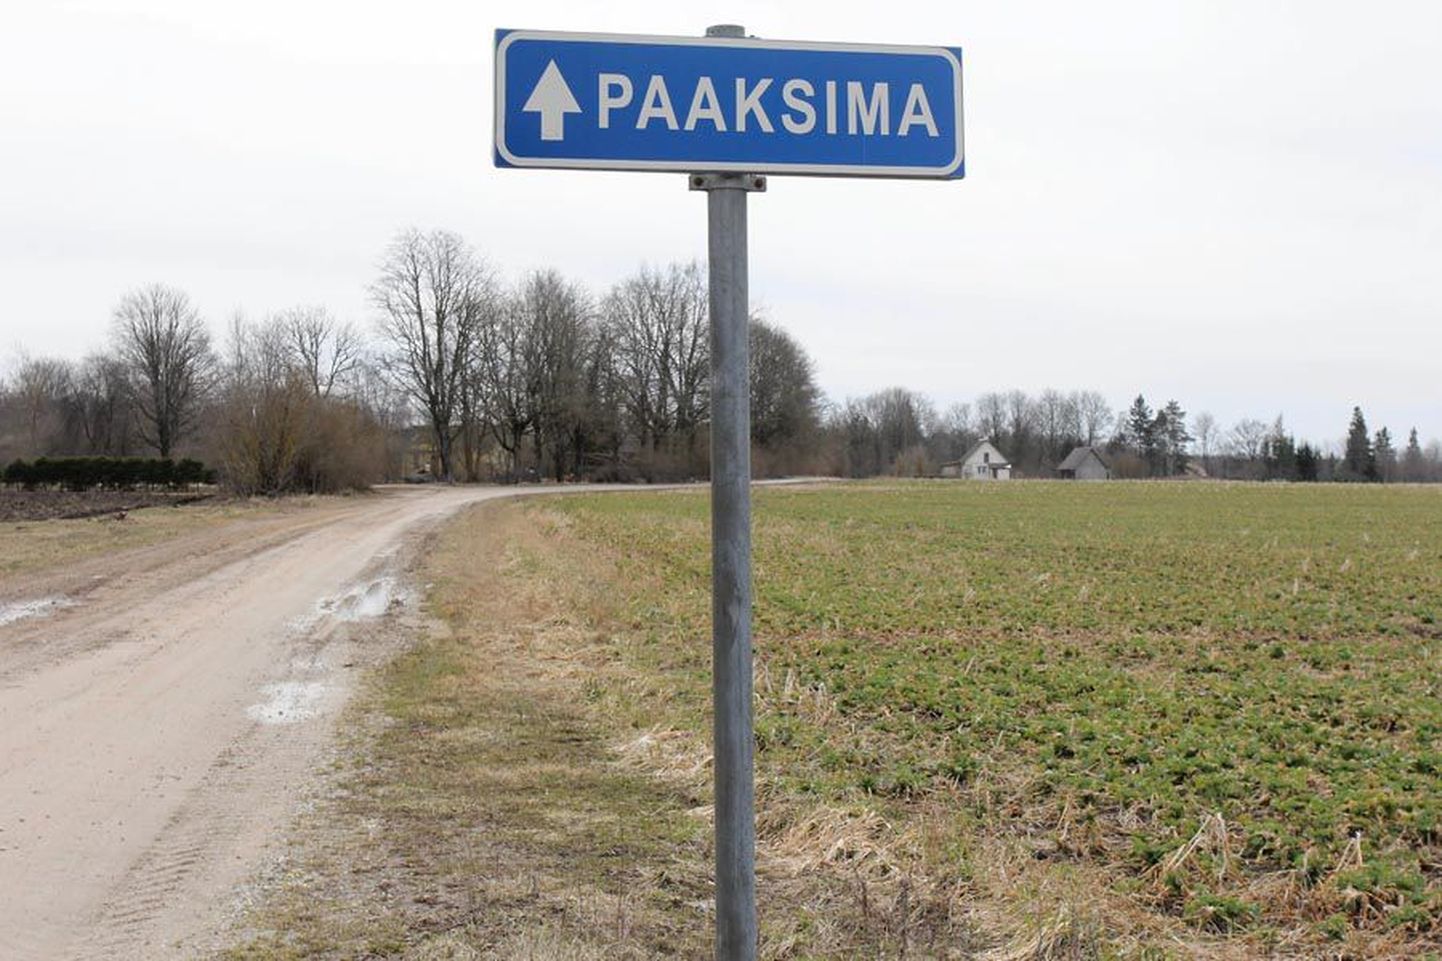 Seda Paaksima külla viivat teed pidas Eesti Posti töötaja autoga sõitmiseks liiga halvas seisukorras olevaks.